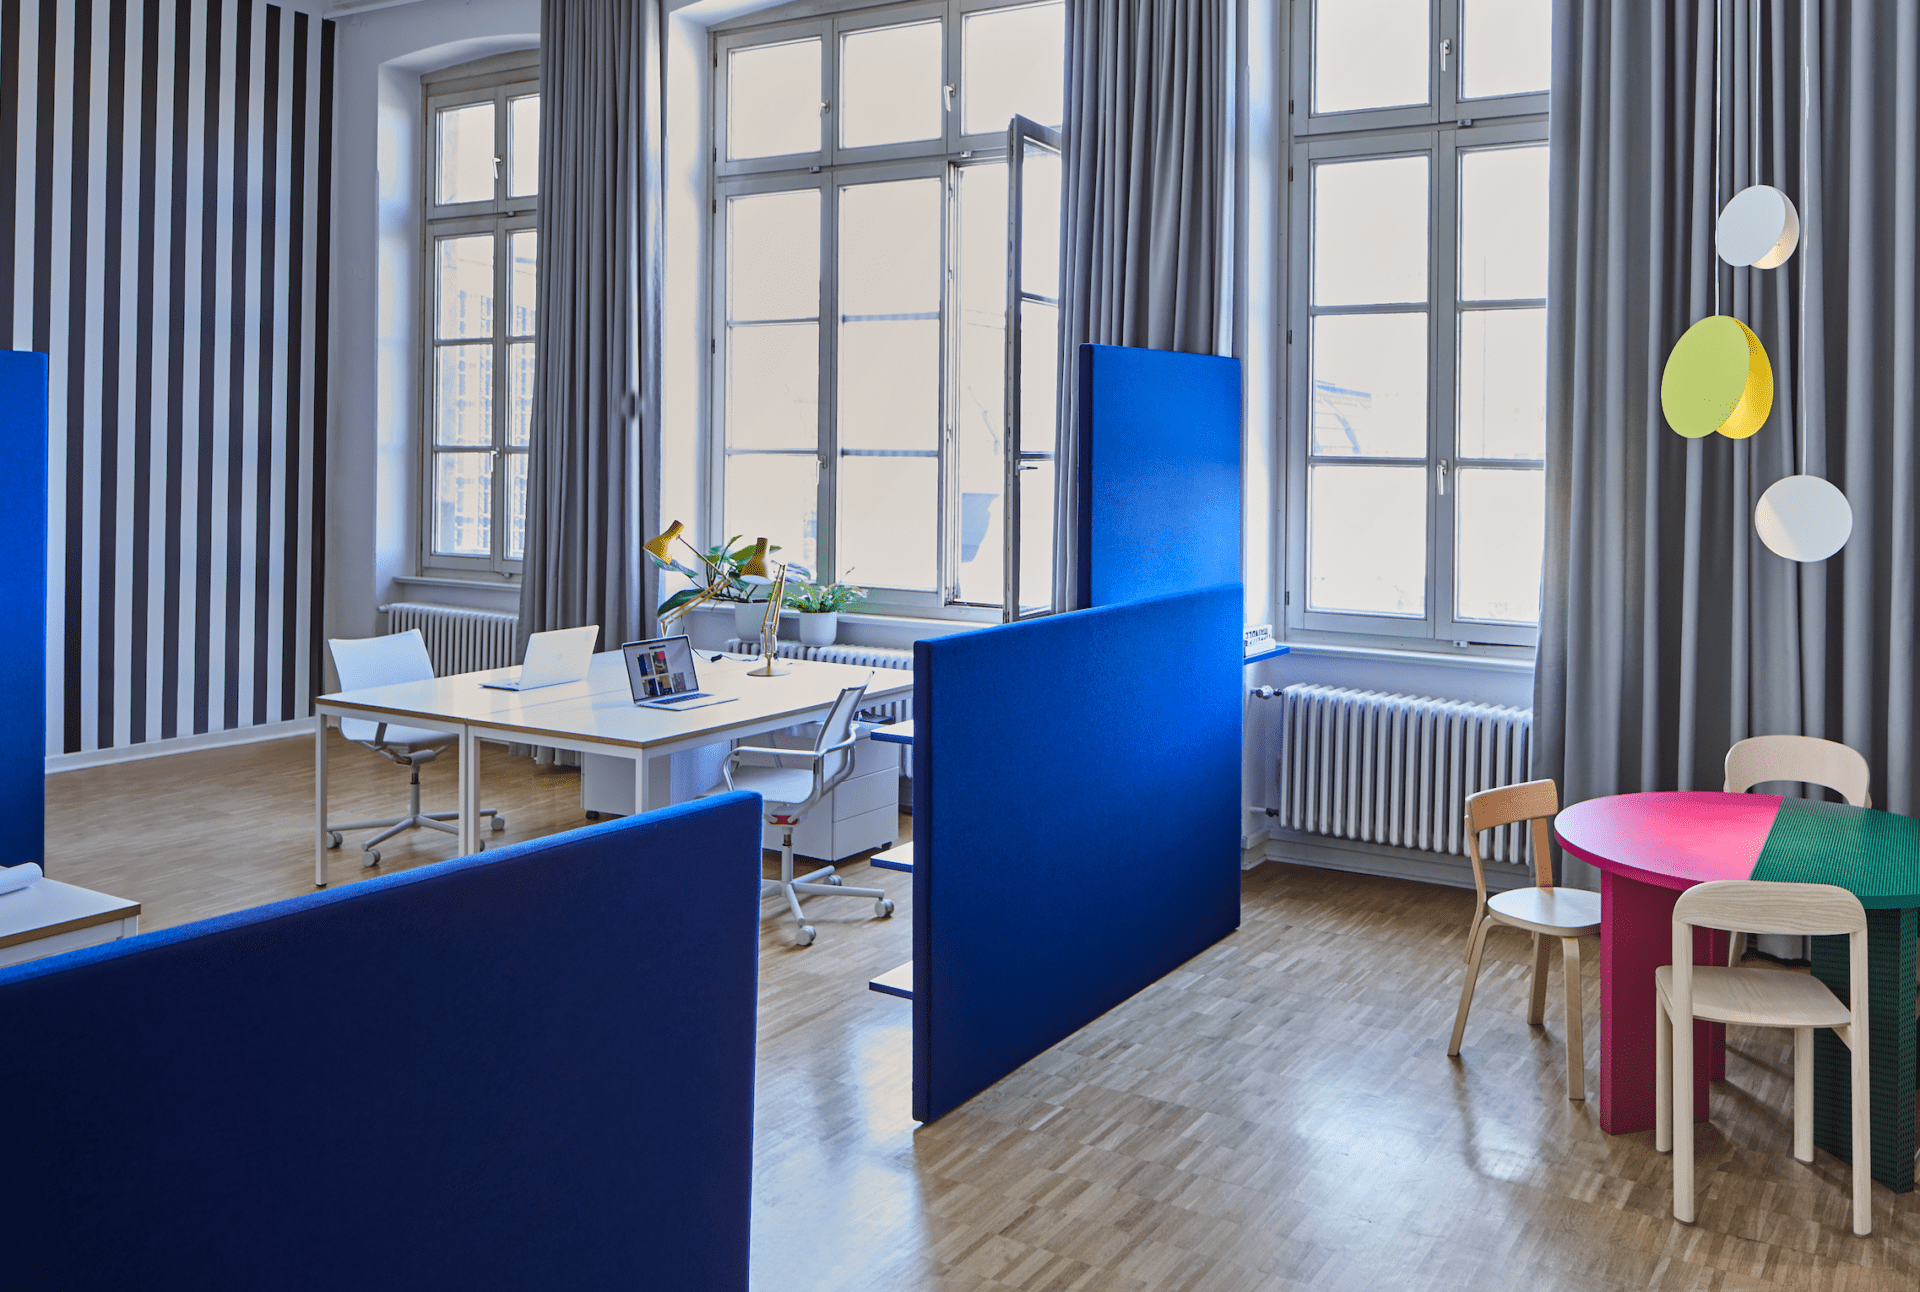 Memphis Milano, Studio Besau-Marguerre, Museum für Kunst und Gewerbe, Hamburg, workspace, office, OnOffice magazine